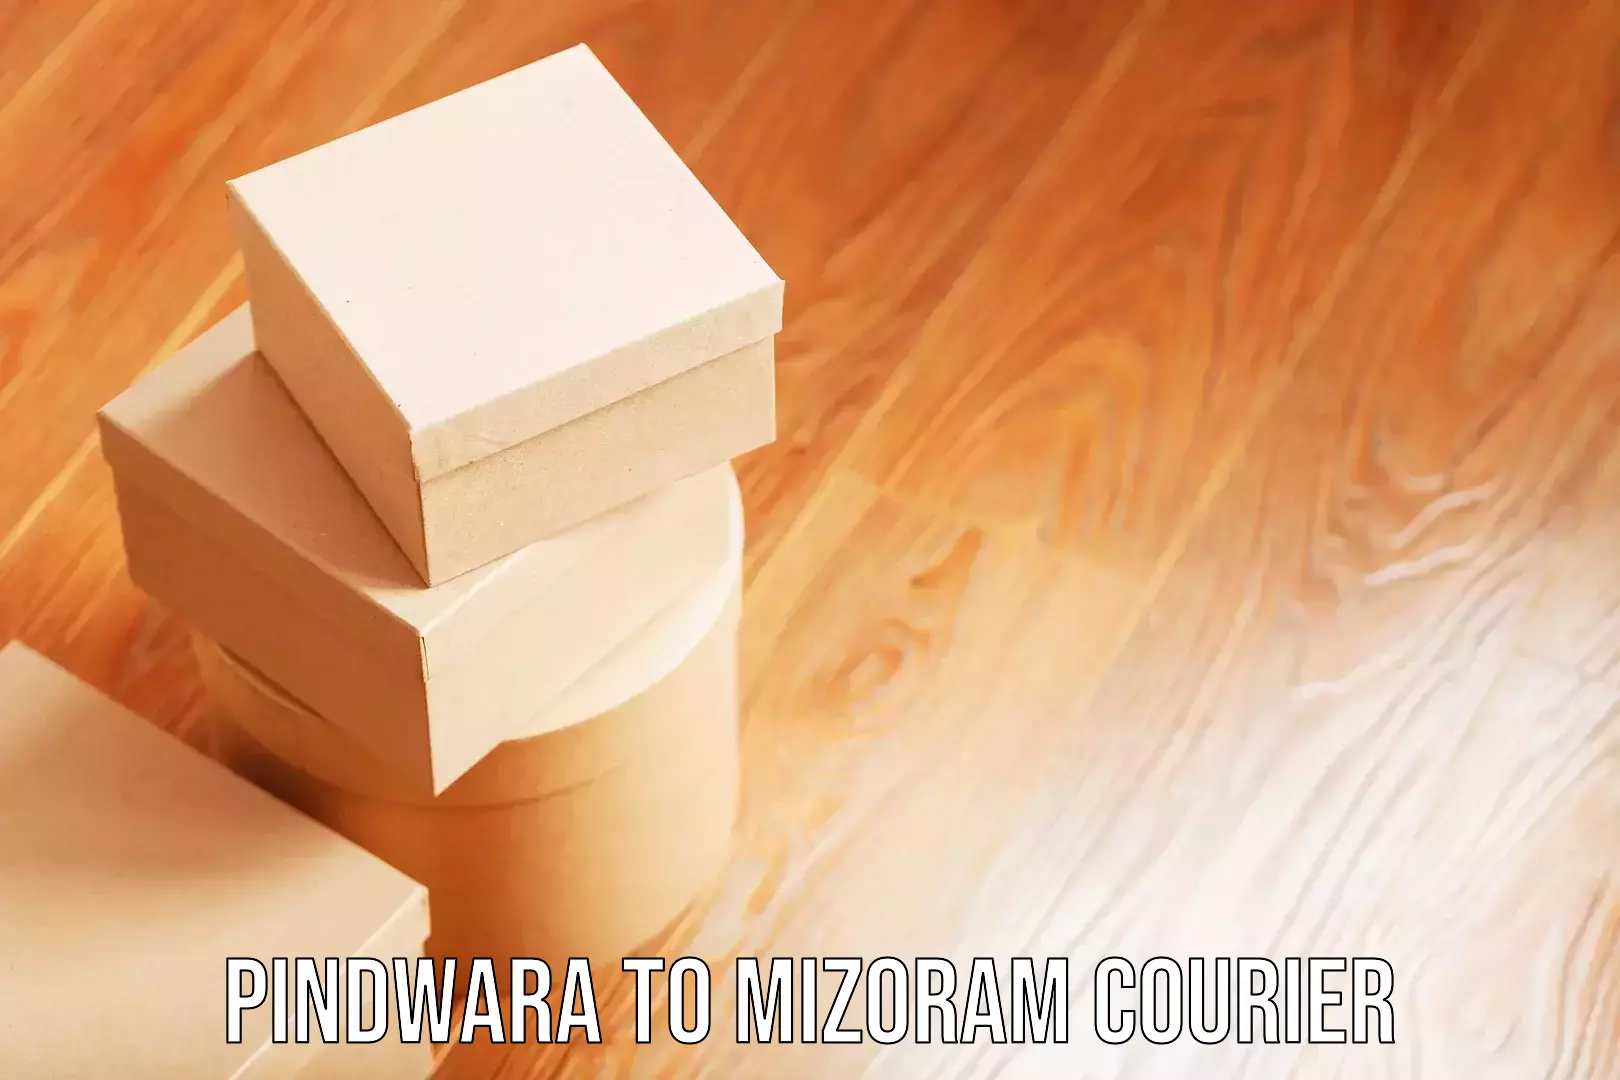 Luggage shipping efficiency Pindwara to Mizoram